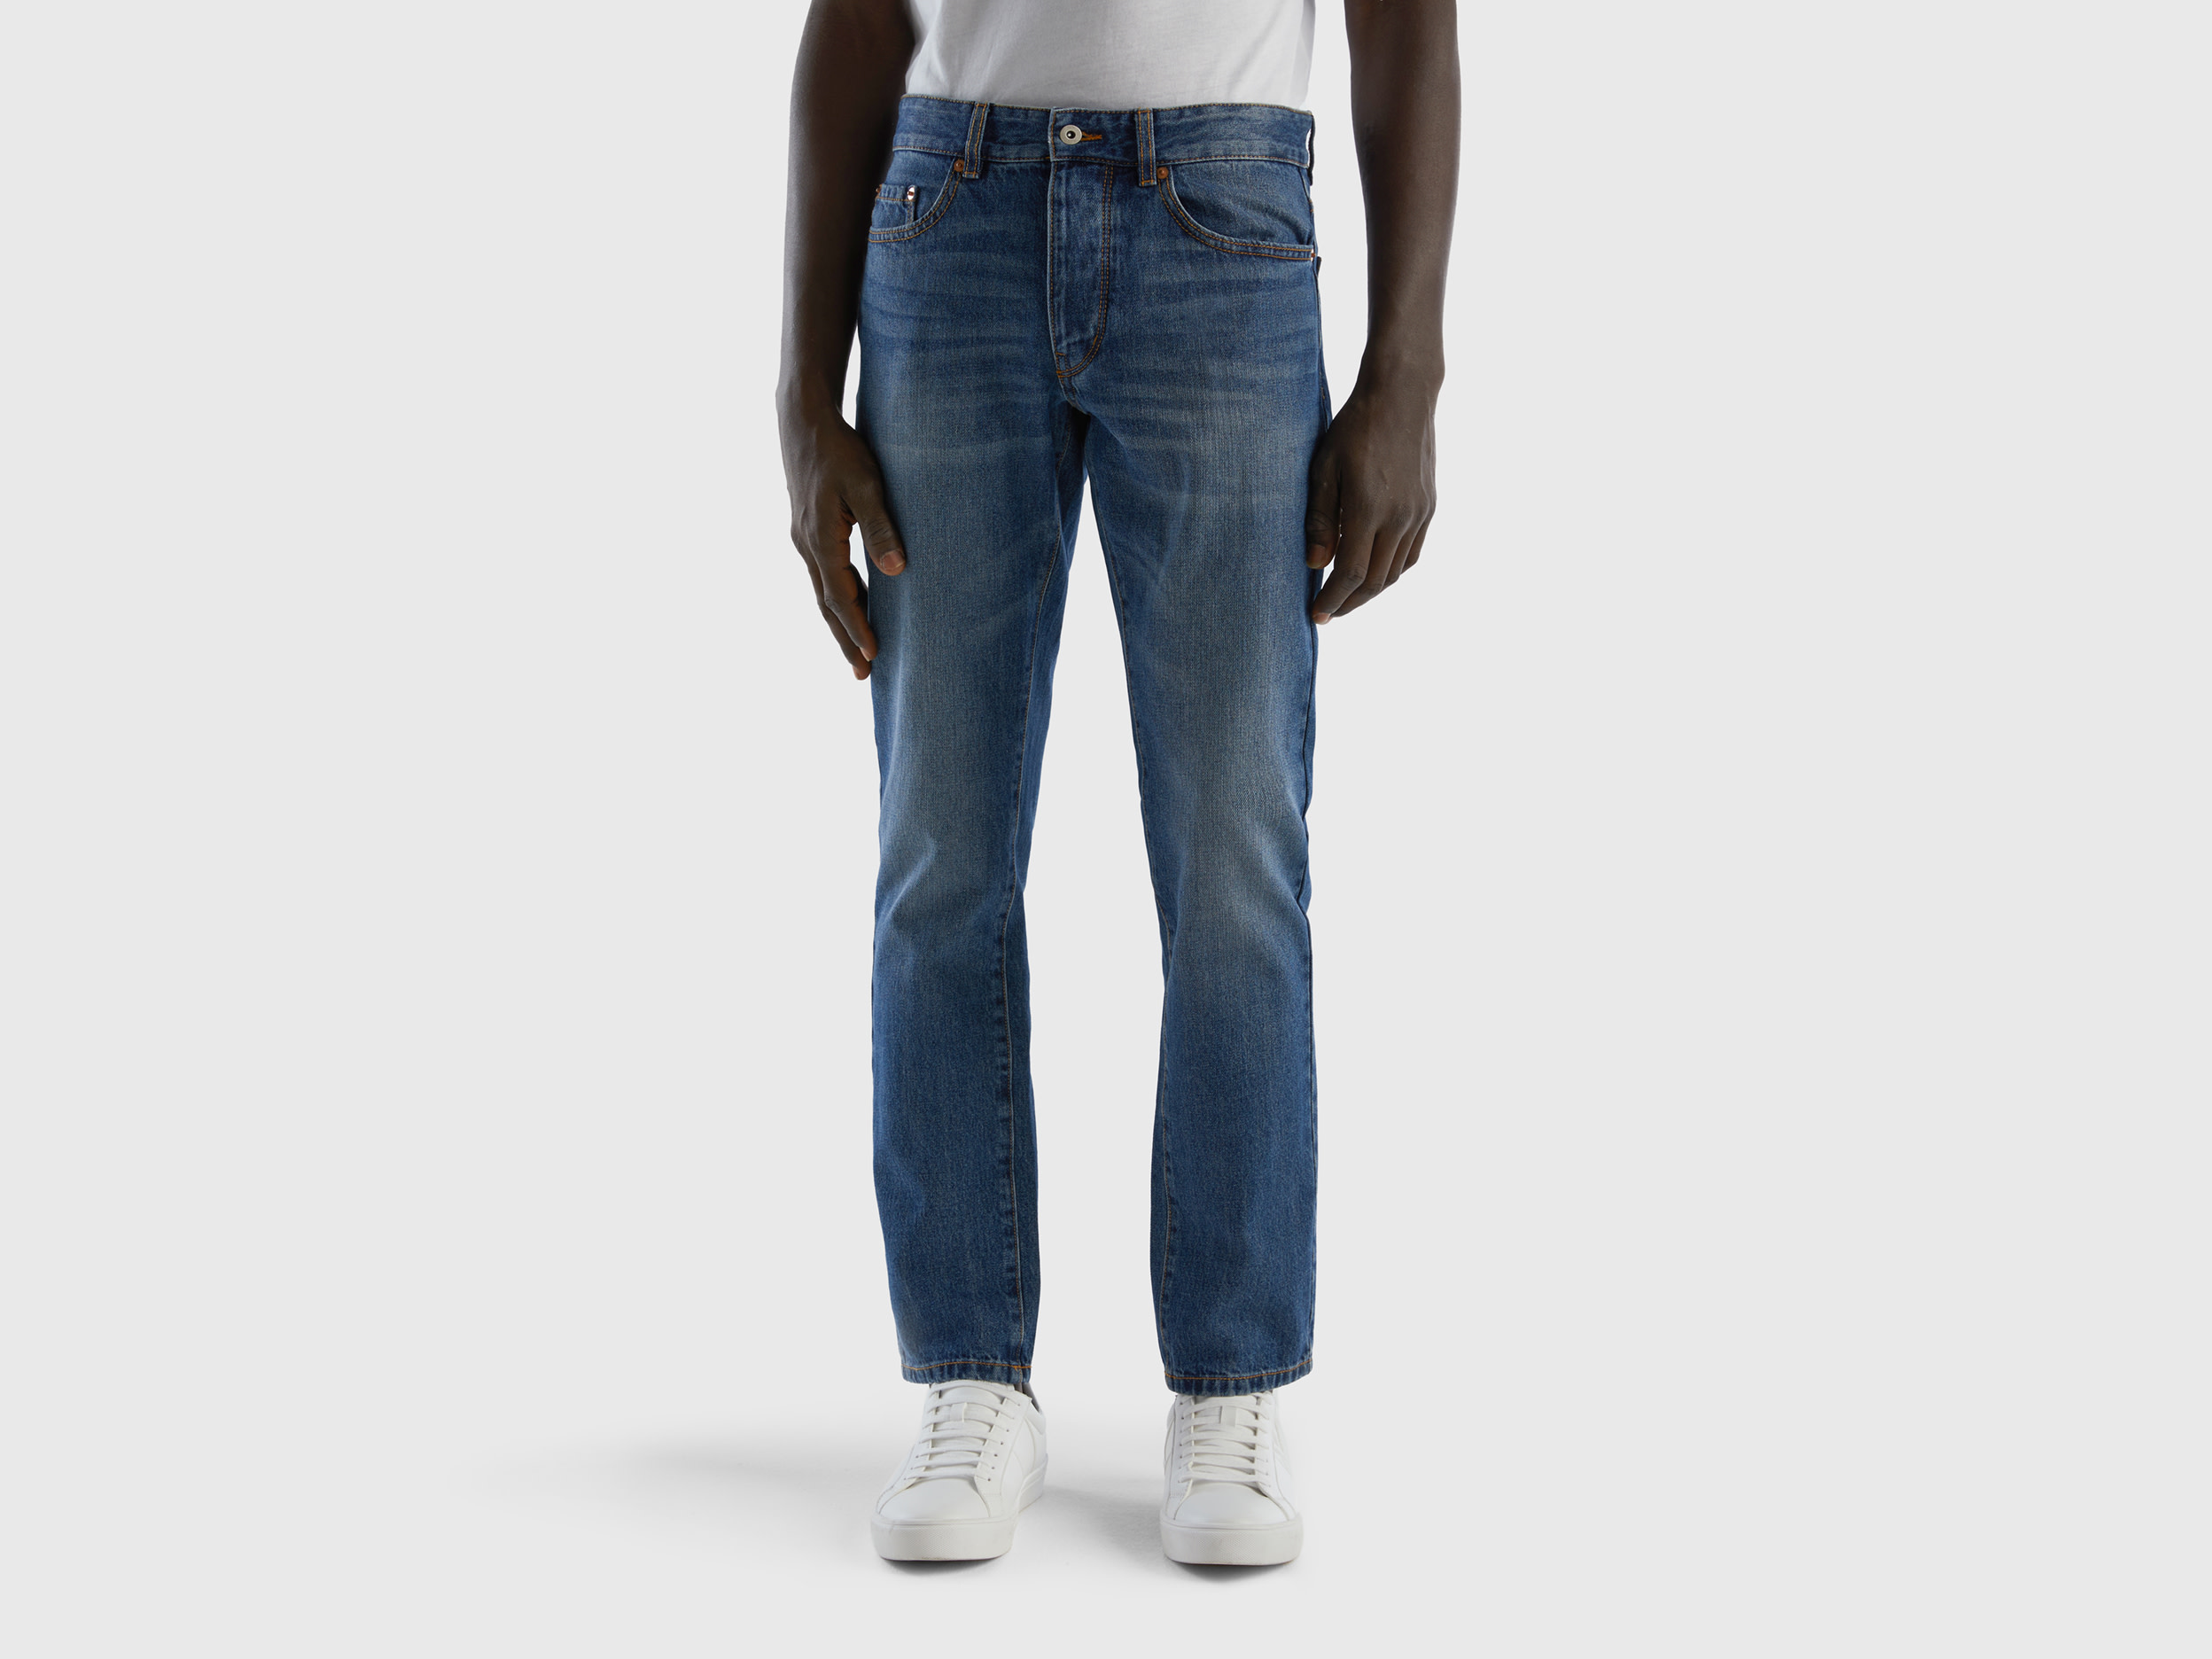 Benetton, Straight Leg 100% Cotton Jeans, size 30, Blue, Men